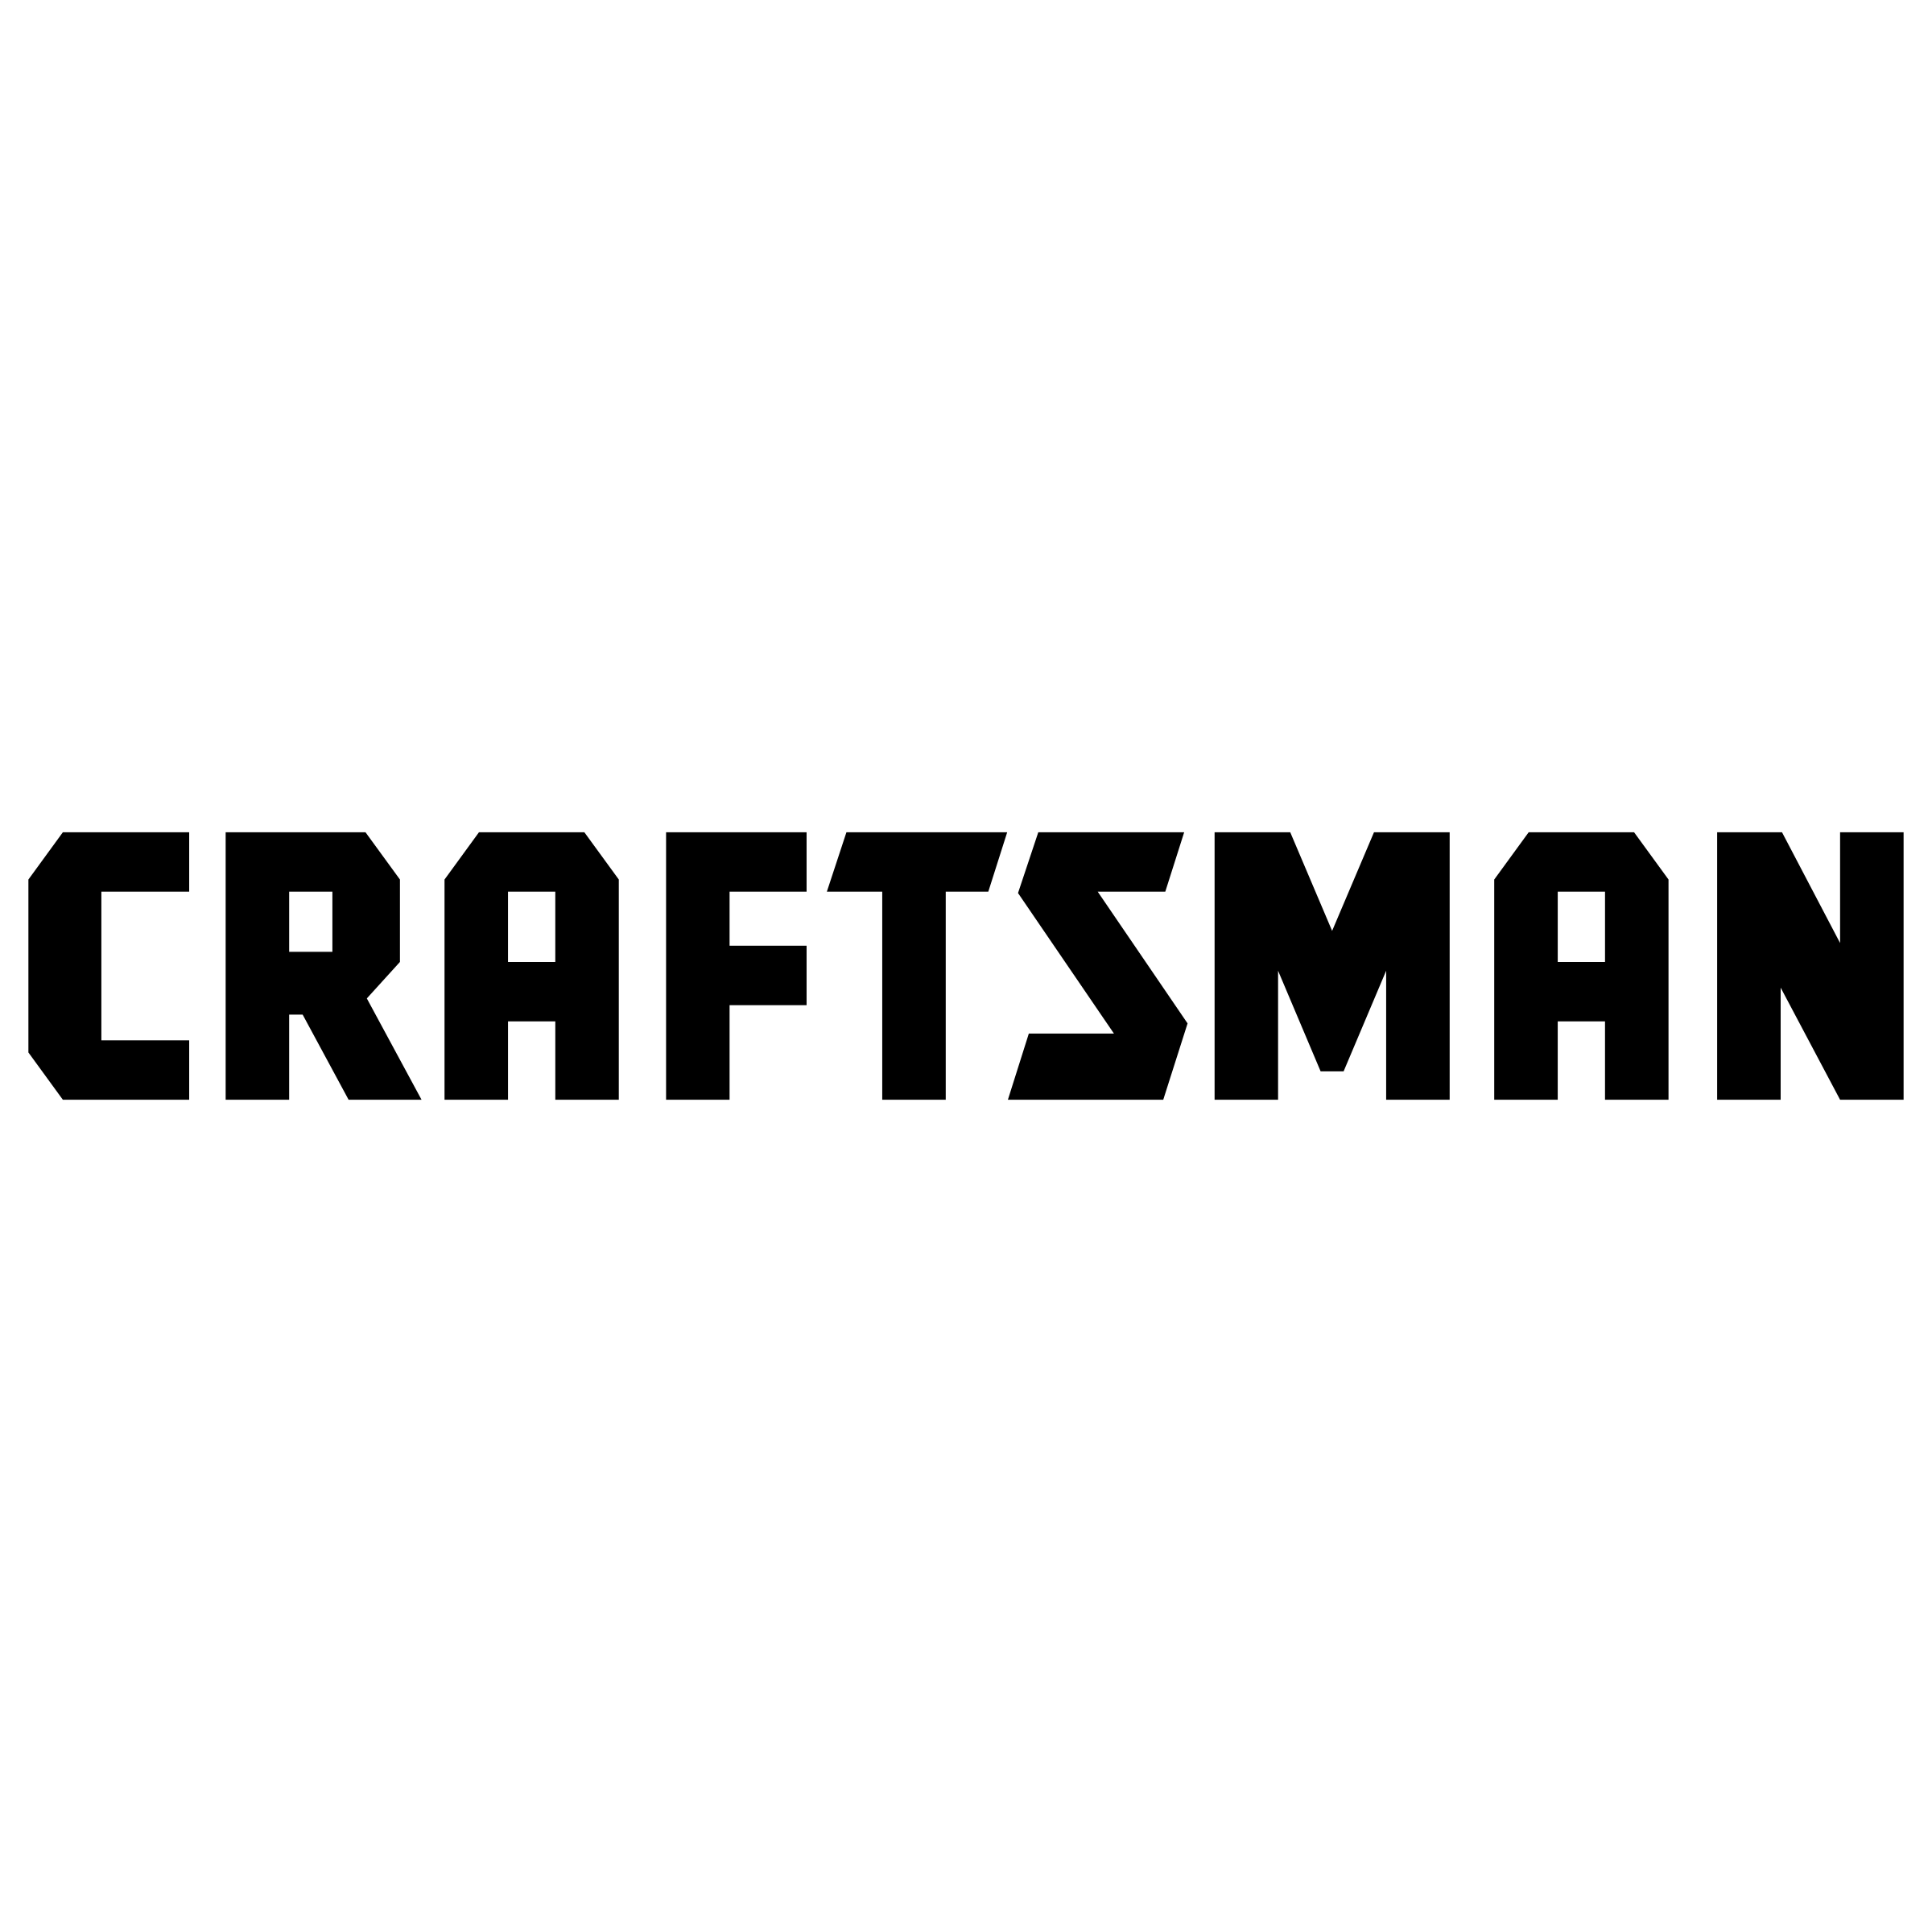 Craftsman Logo - Craftsman 4243 Logo PNG Transparent & SVG Vector